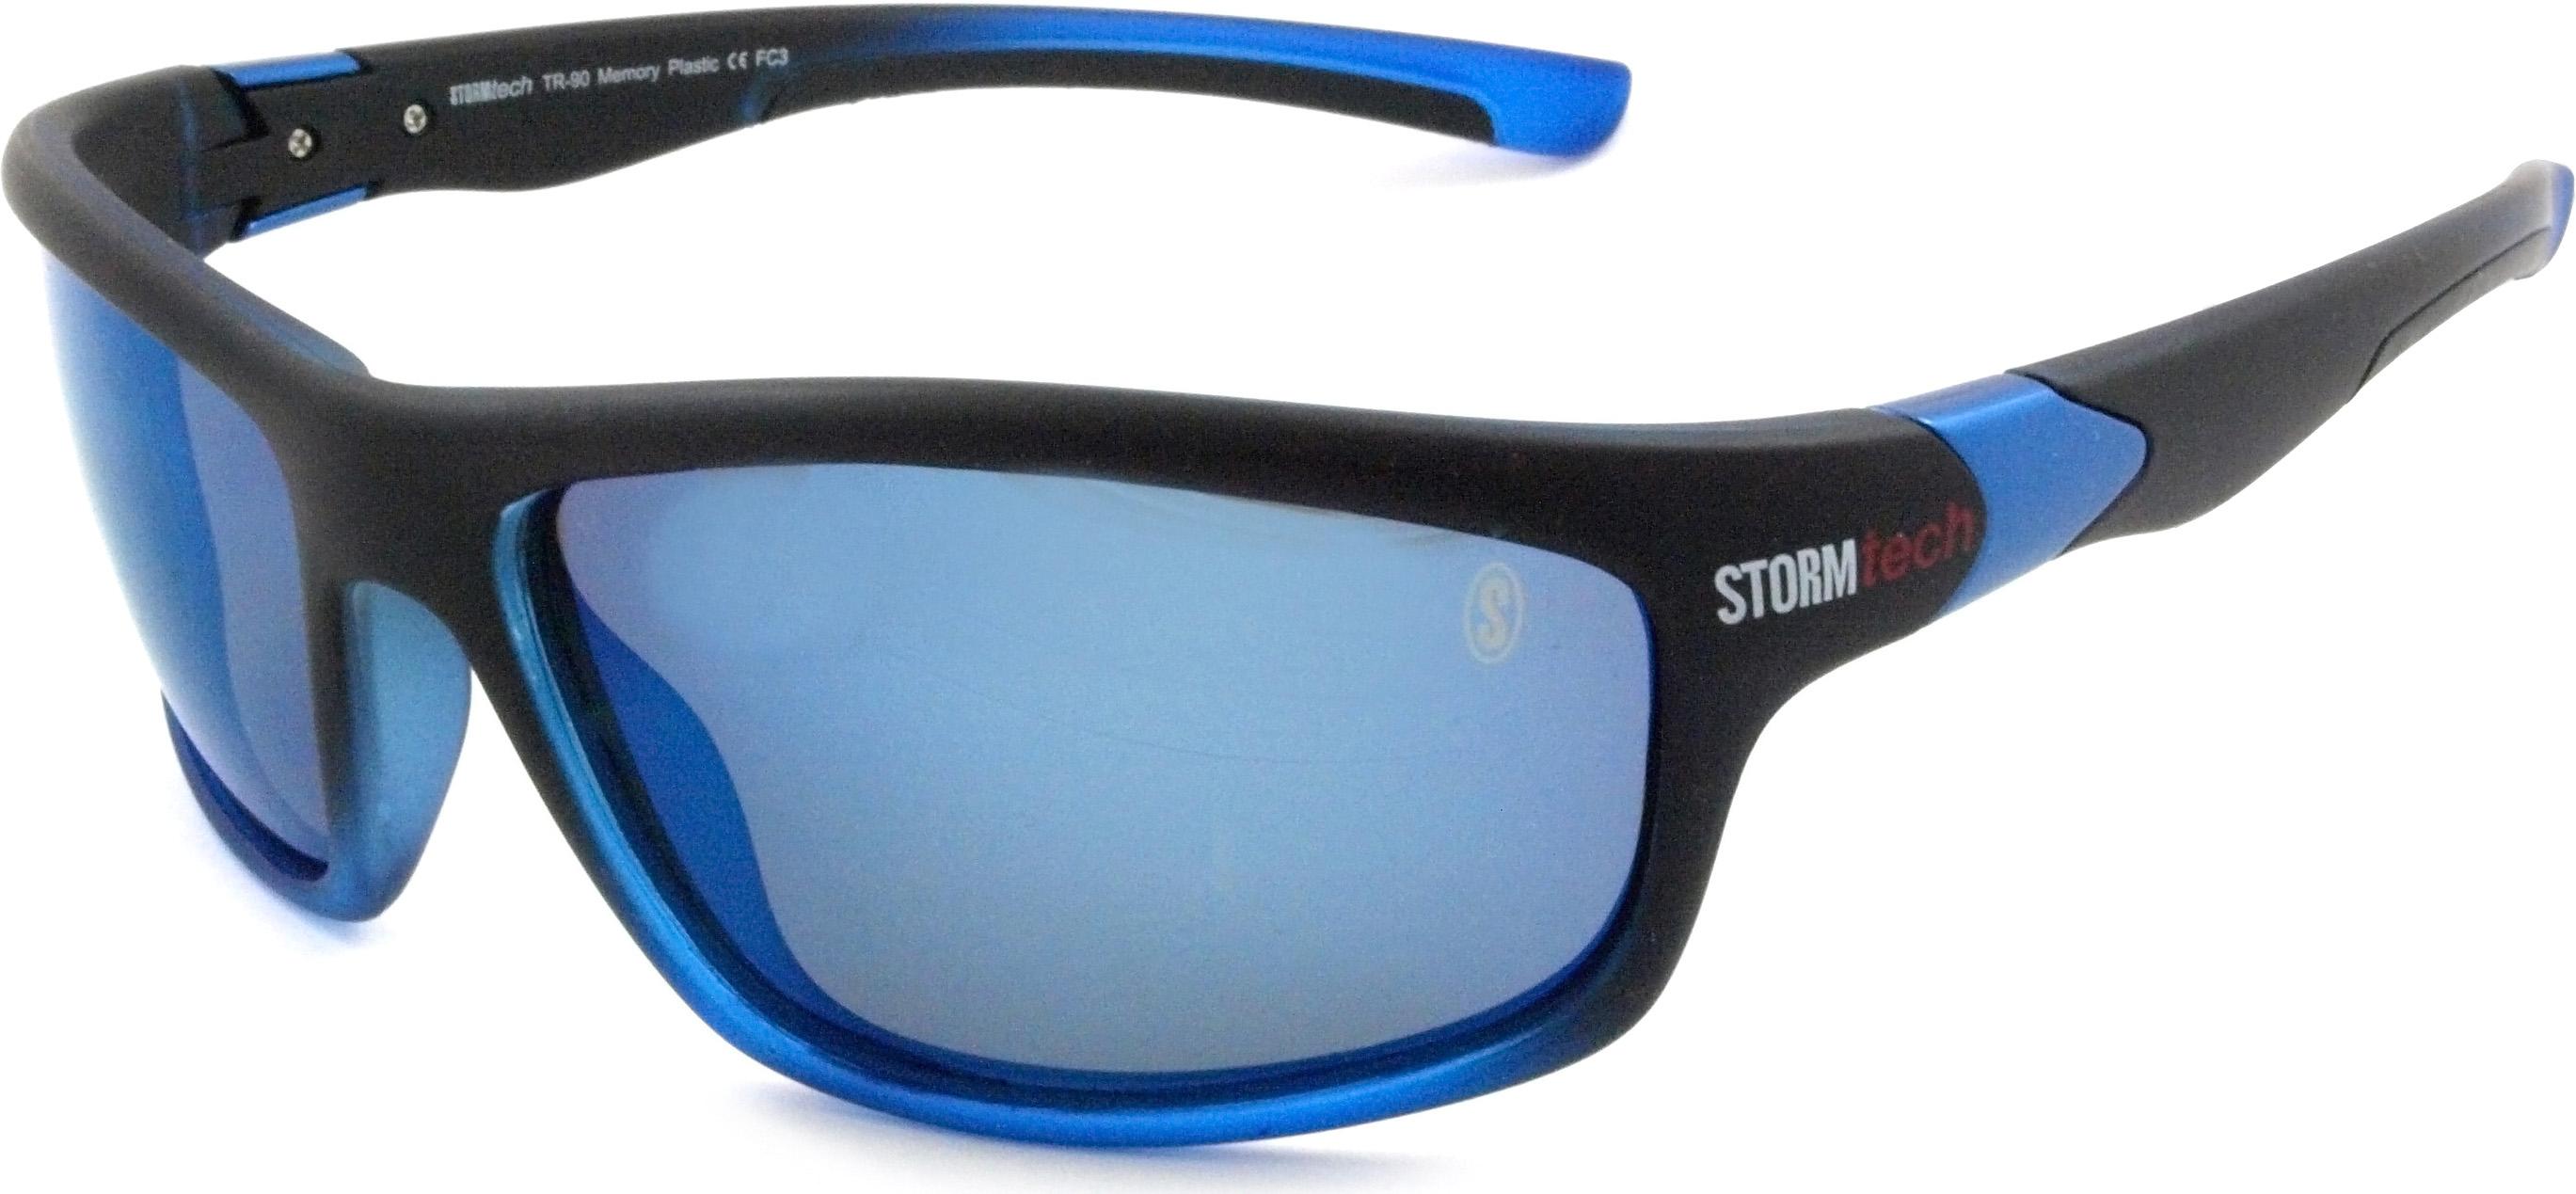 Stormtech Crete Blue Sunglasses - Black